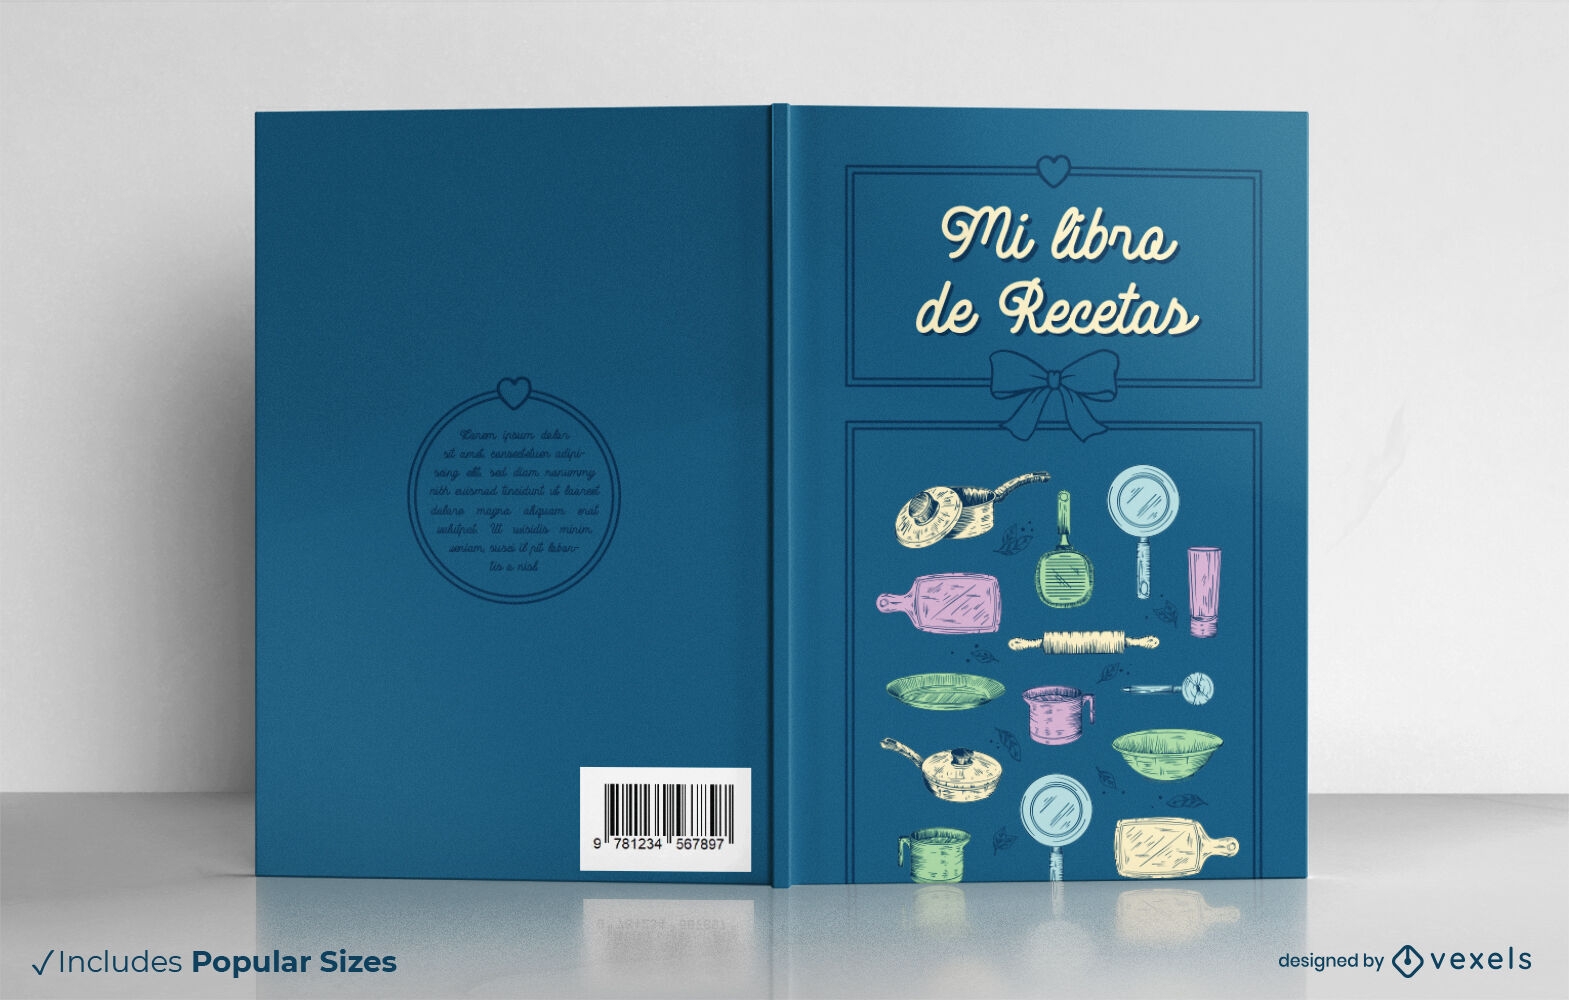 Spanish recipe book cover design